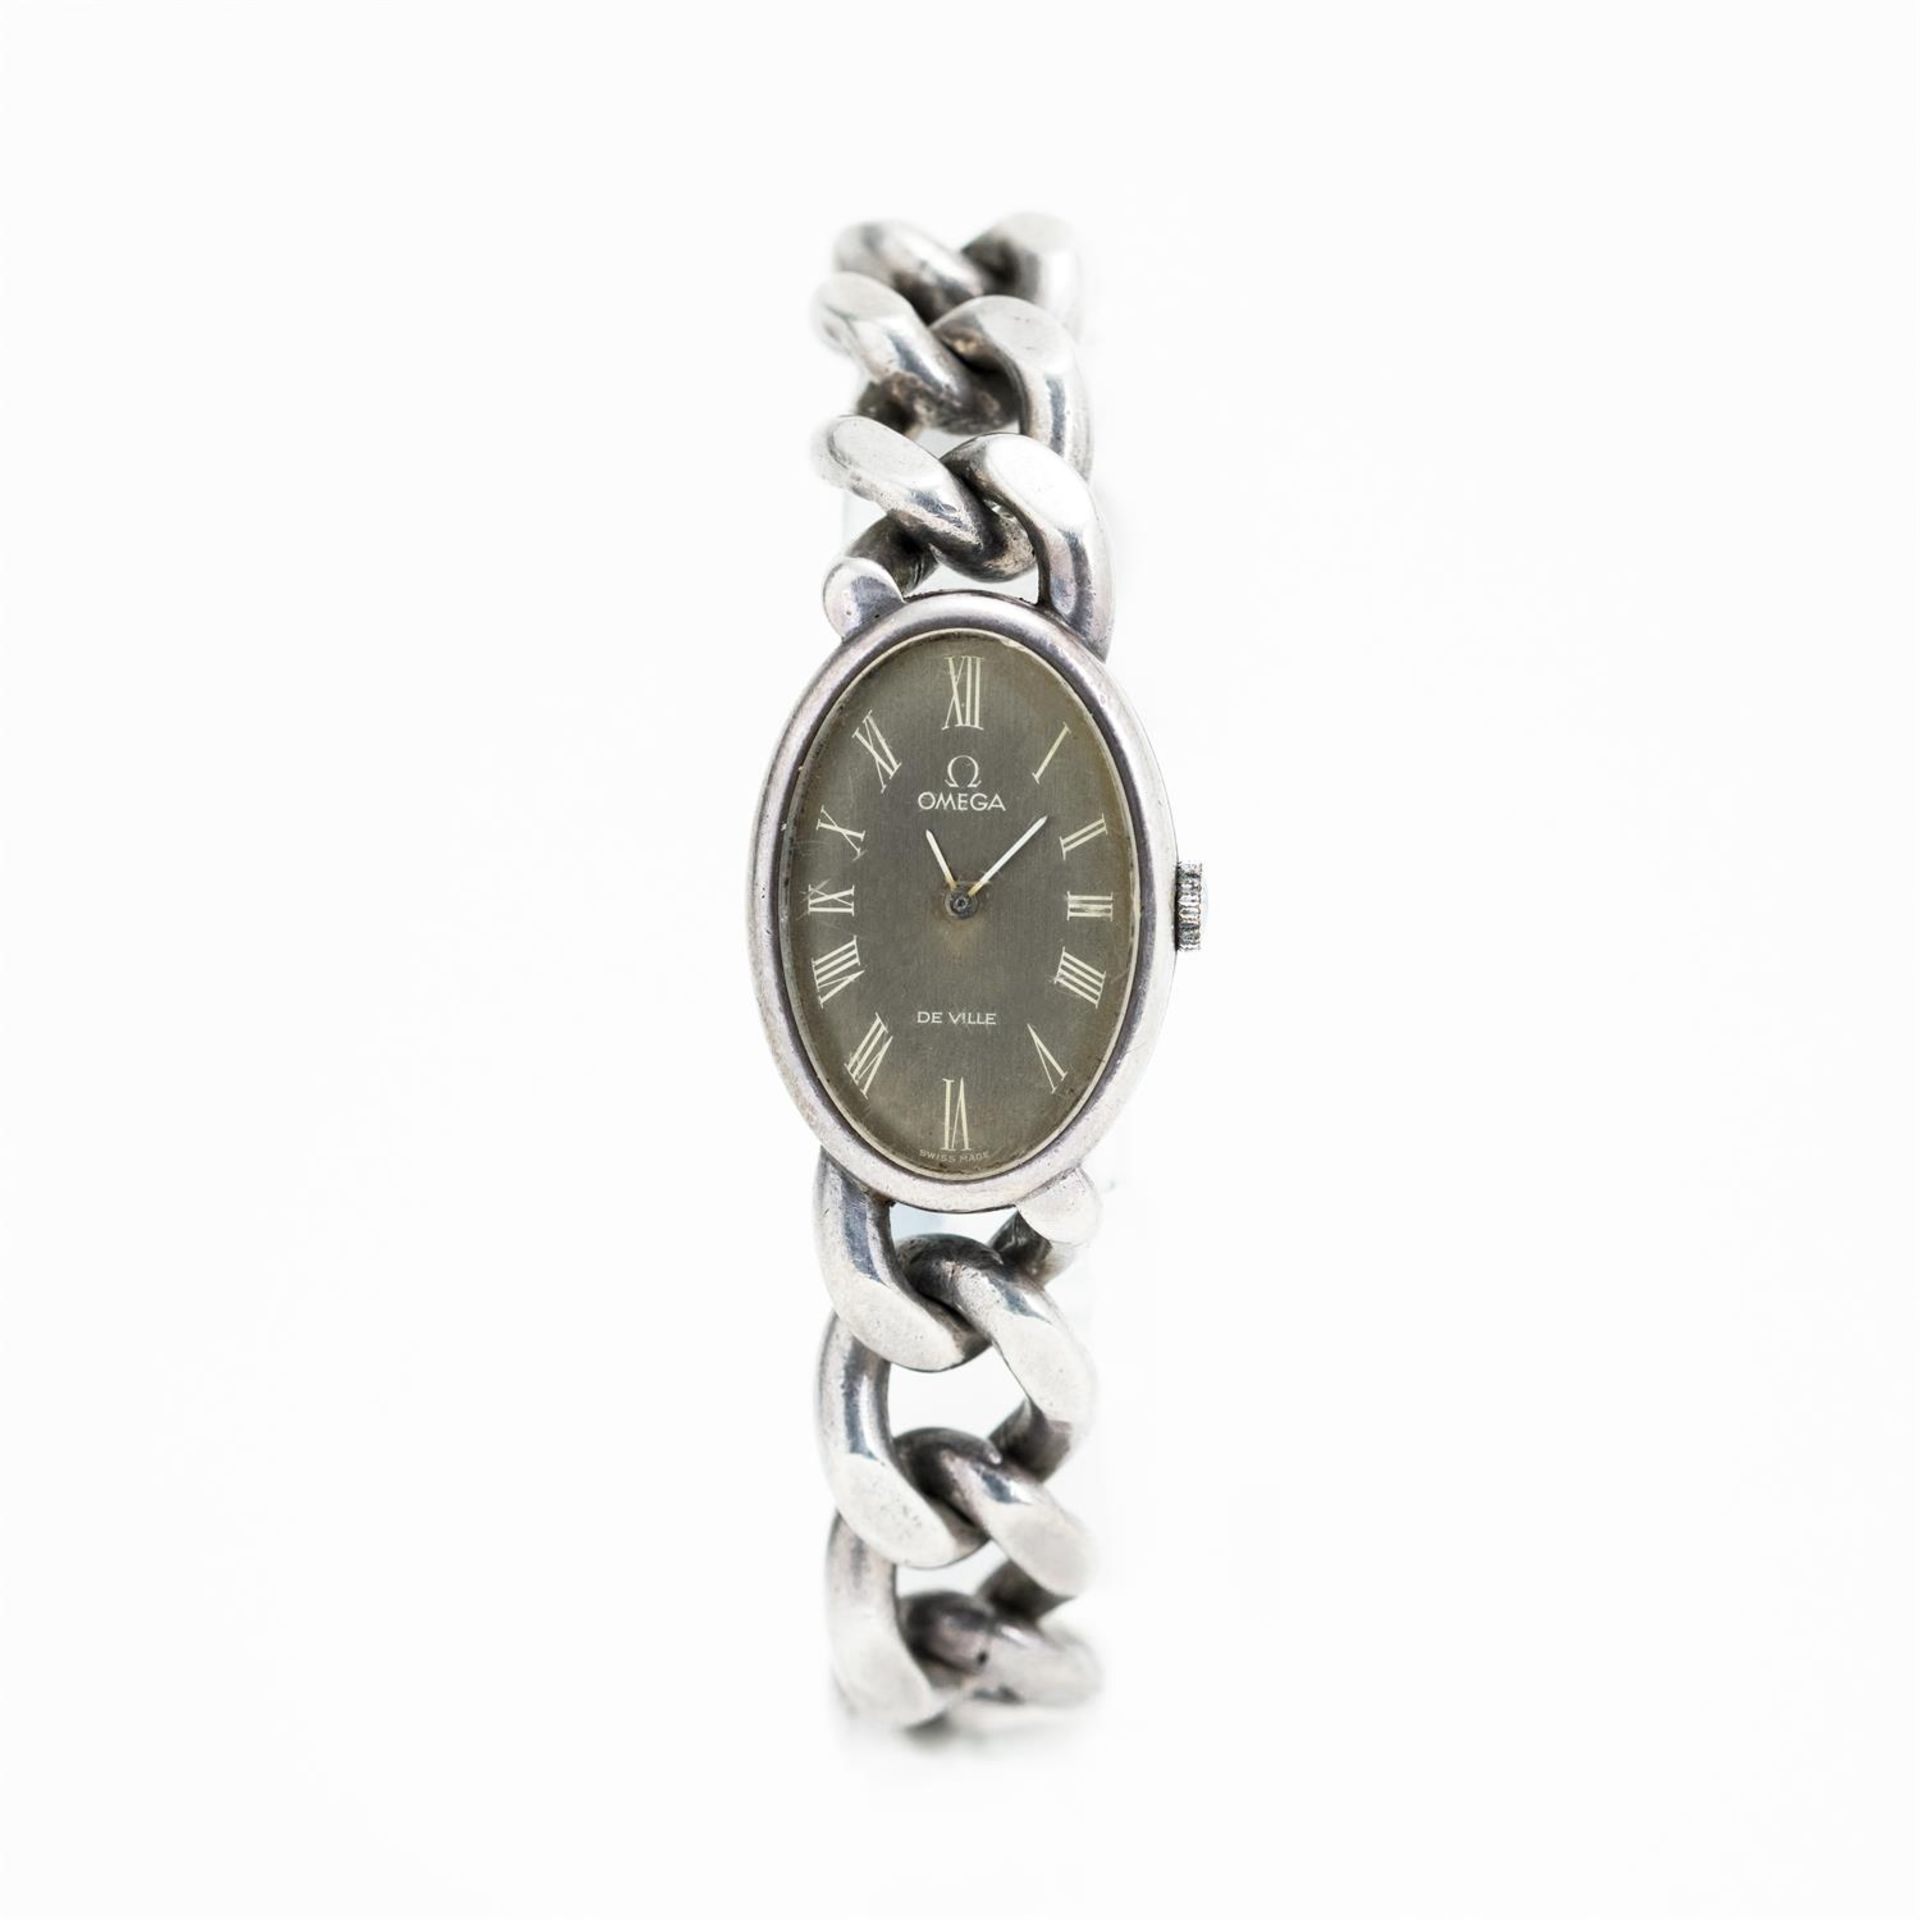 Omega Jeux D'Argent Silver Bracelet Watch - Image 2 of 4